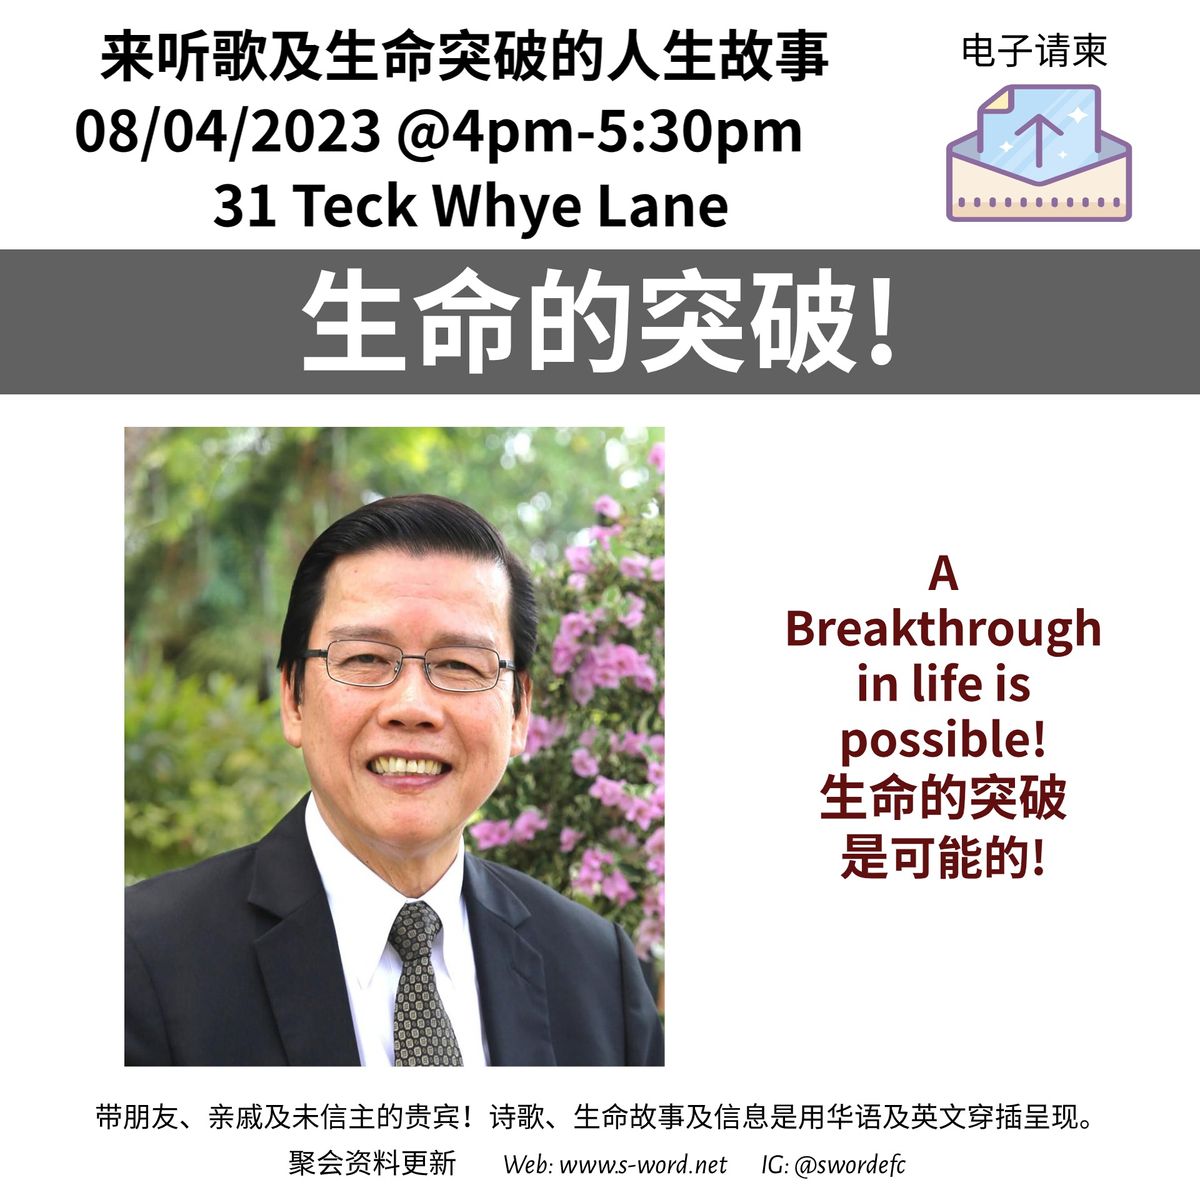 Sat 08/04/2023 @4:00pm "Breakthrough In Life" Event. 《 生命的突破》聚会。